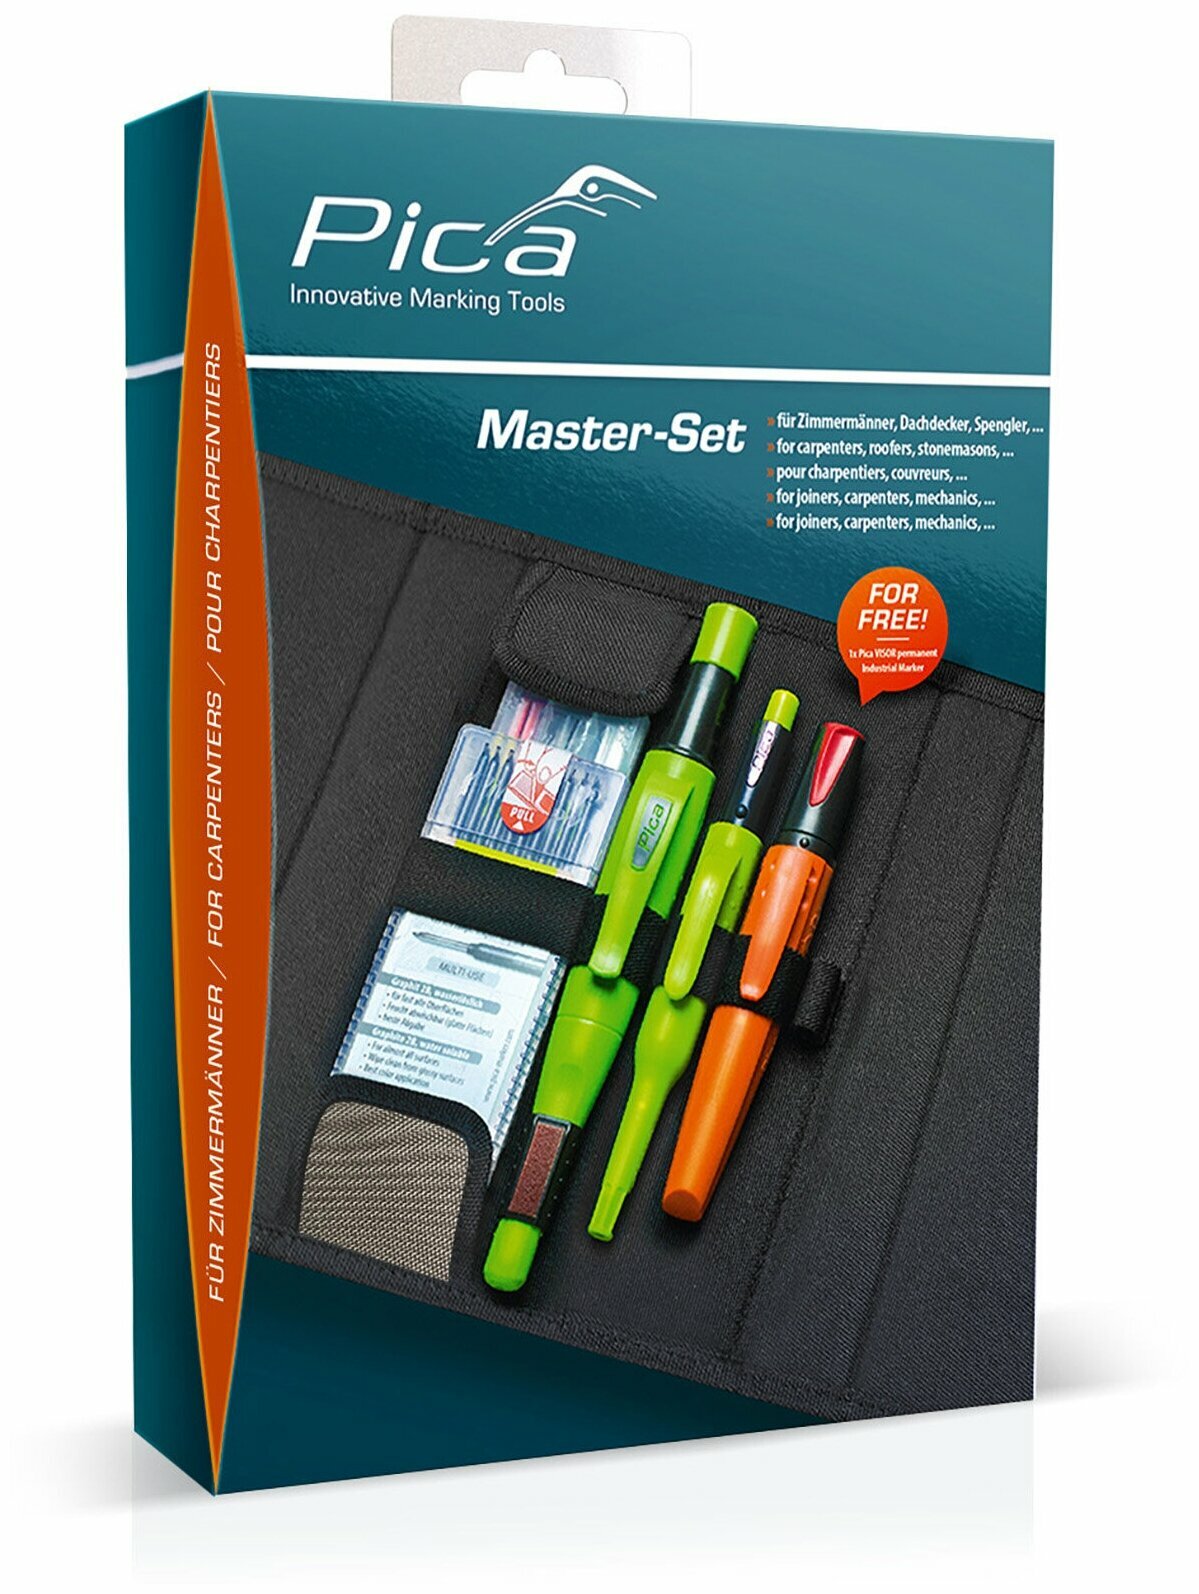 Набор карандашей и маркера для разметки Pica Carpenter для плотника Master-Set 55030 4 + 1 предмета в чехле-органайзере PICA-55030